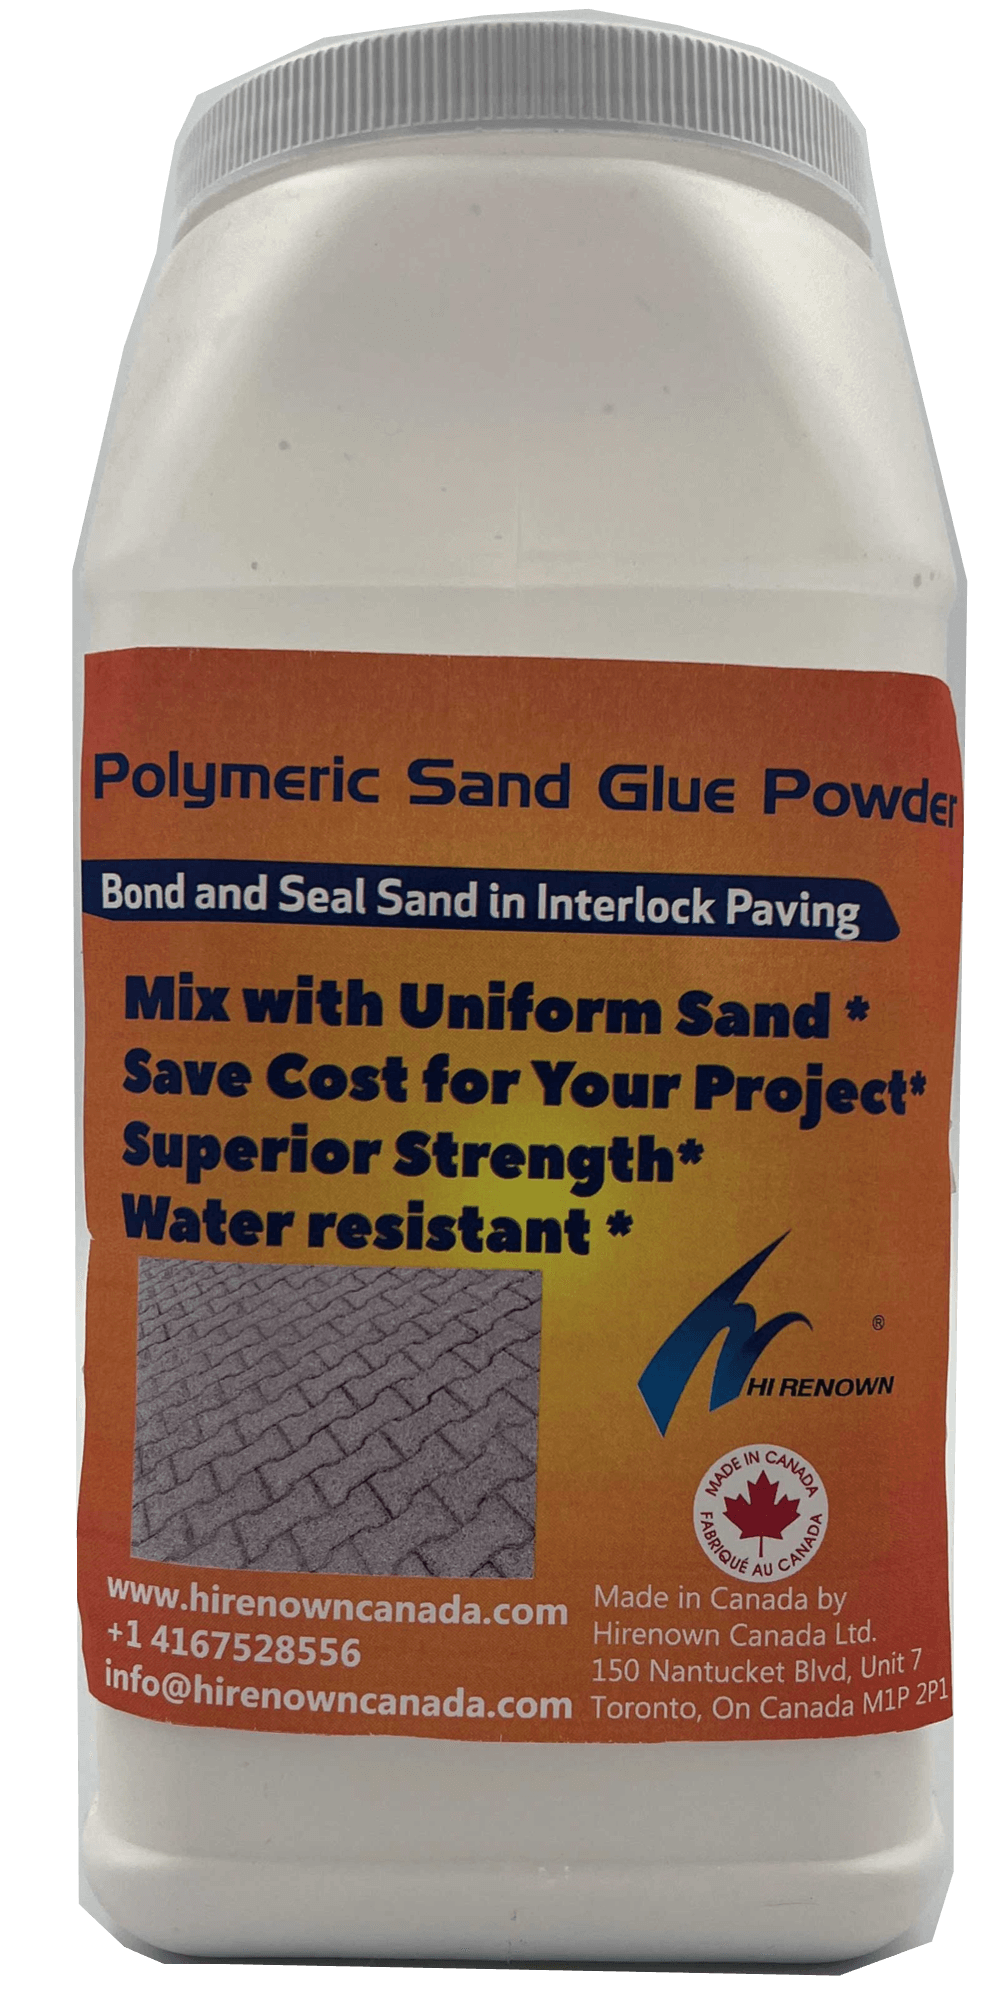 Polymeric sand glue powder